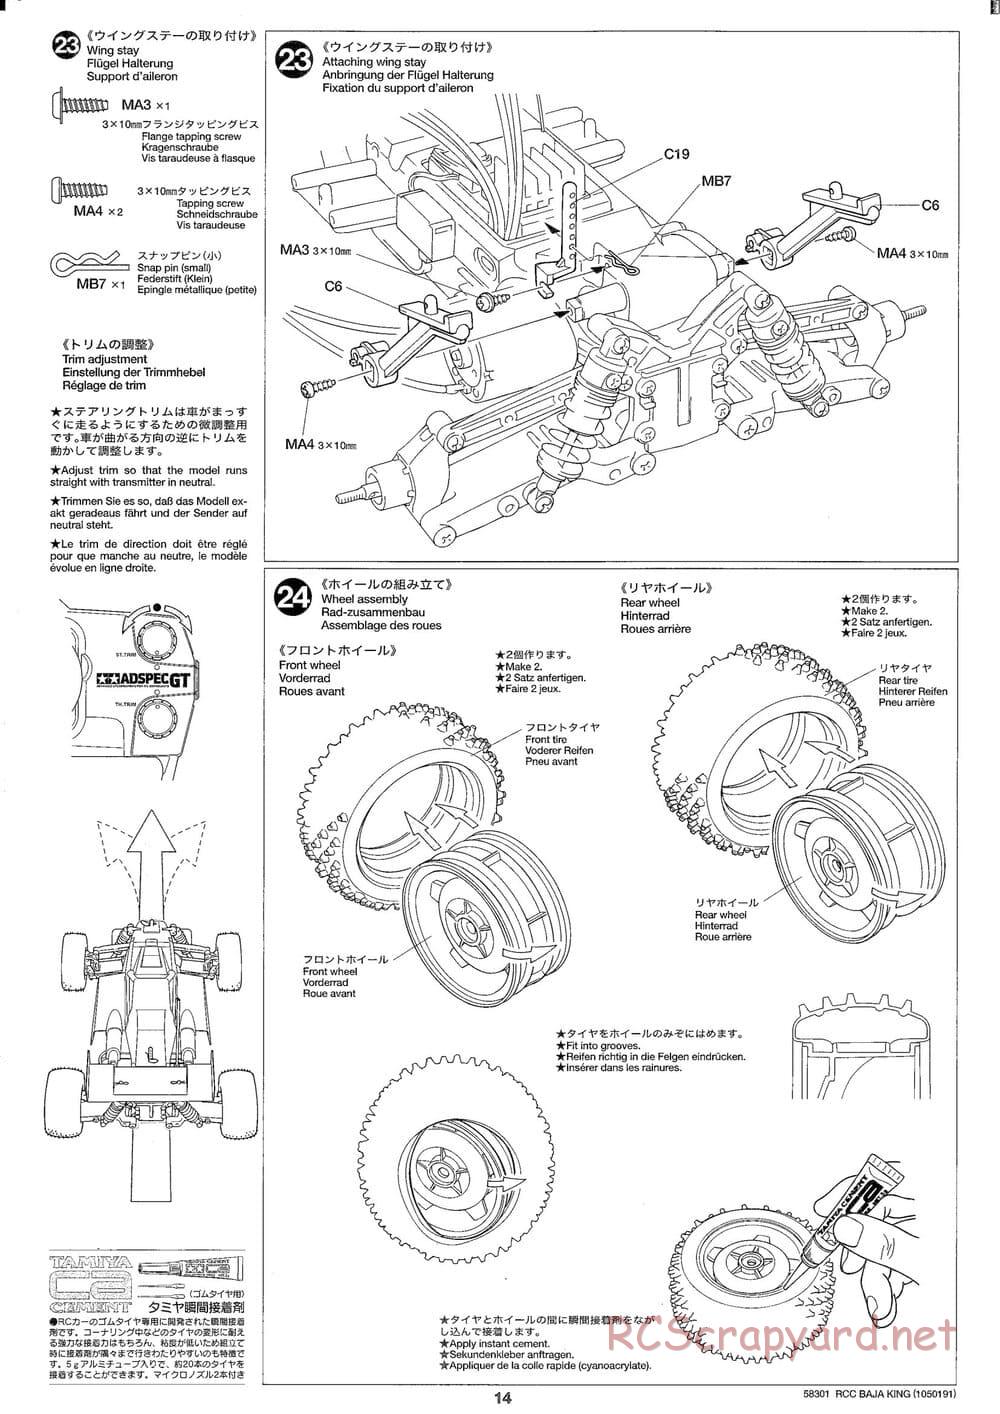 Tamiya - Baja King - TL-01B Chassis - Manual - Page 14